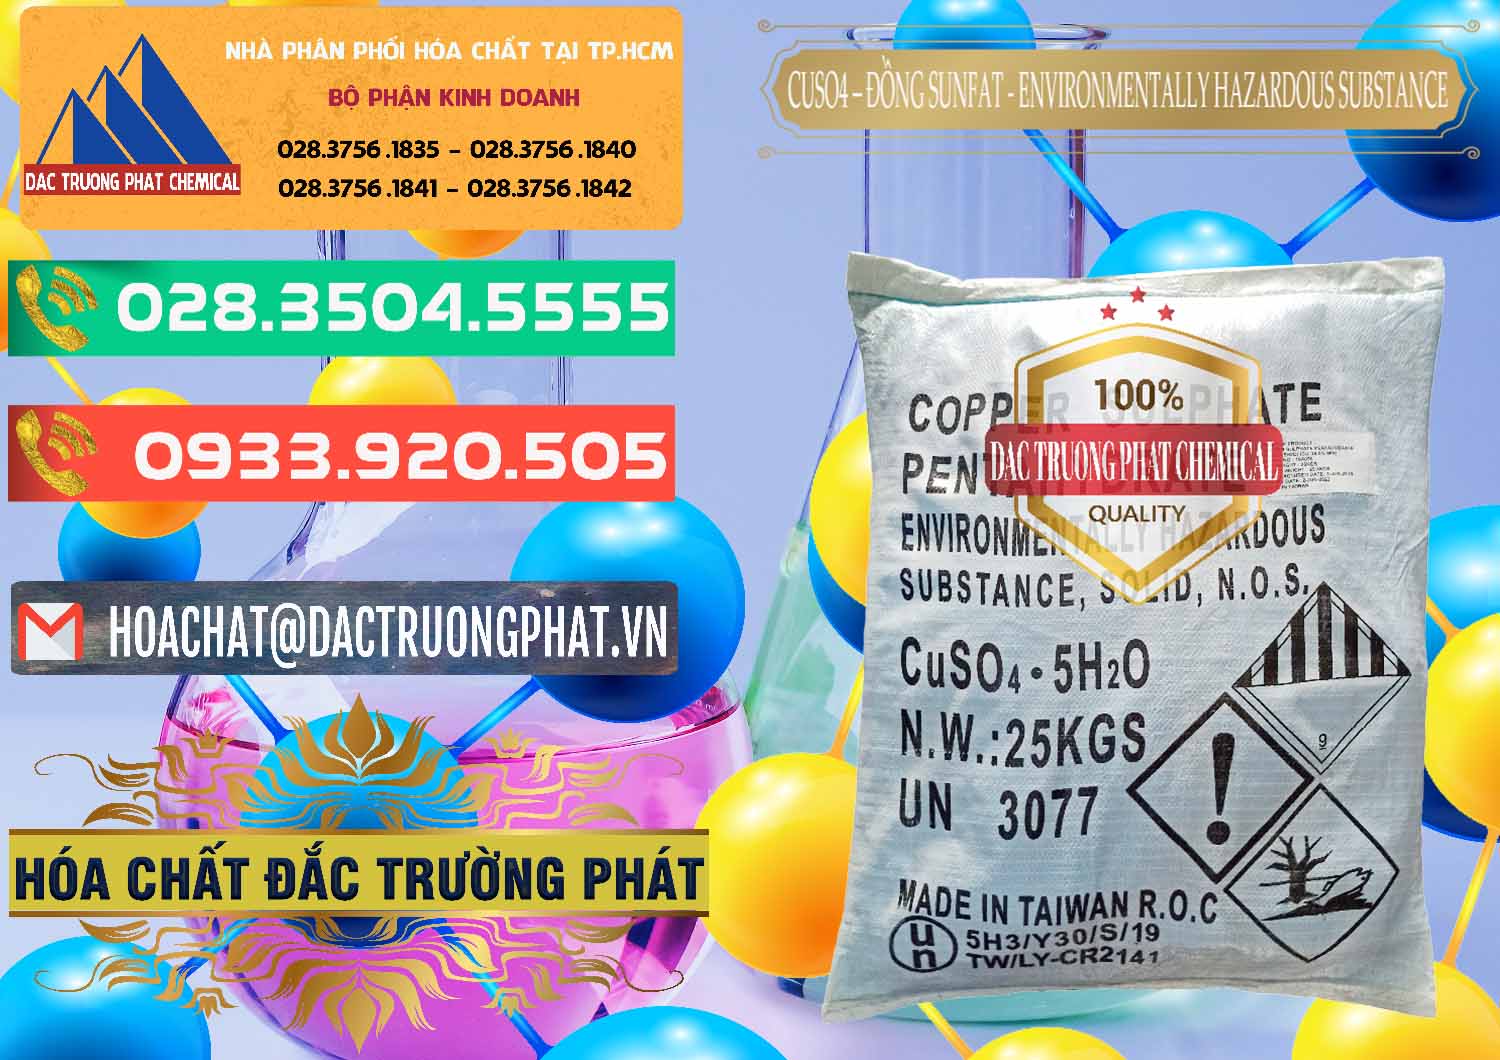 Cty chuyên bán ( phân phối ) CuSO4 – Đồng Sunfat Đài Loan Taiwan - 0059 - Công ty chuyên nhập khẩu & phân phối hóa chất tại TP.HCM - congtyhoachat.com.vn